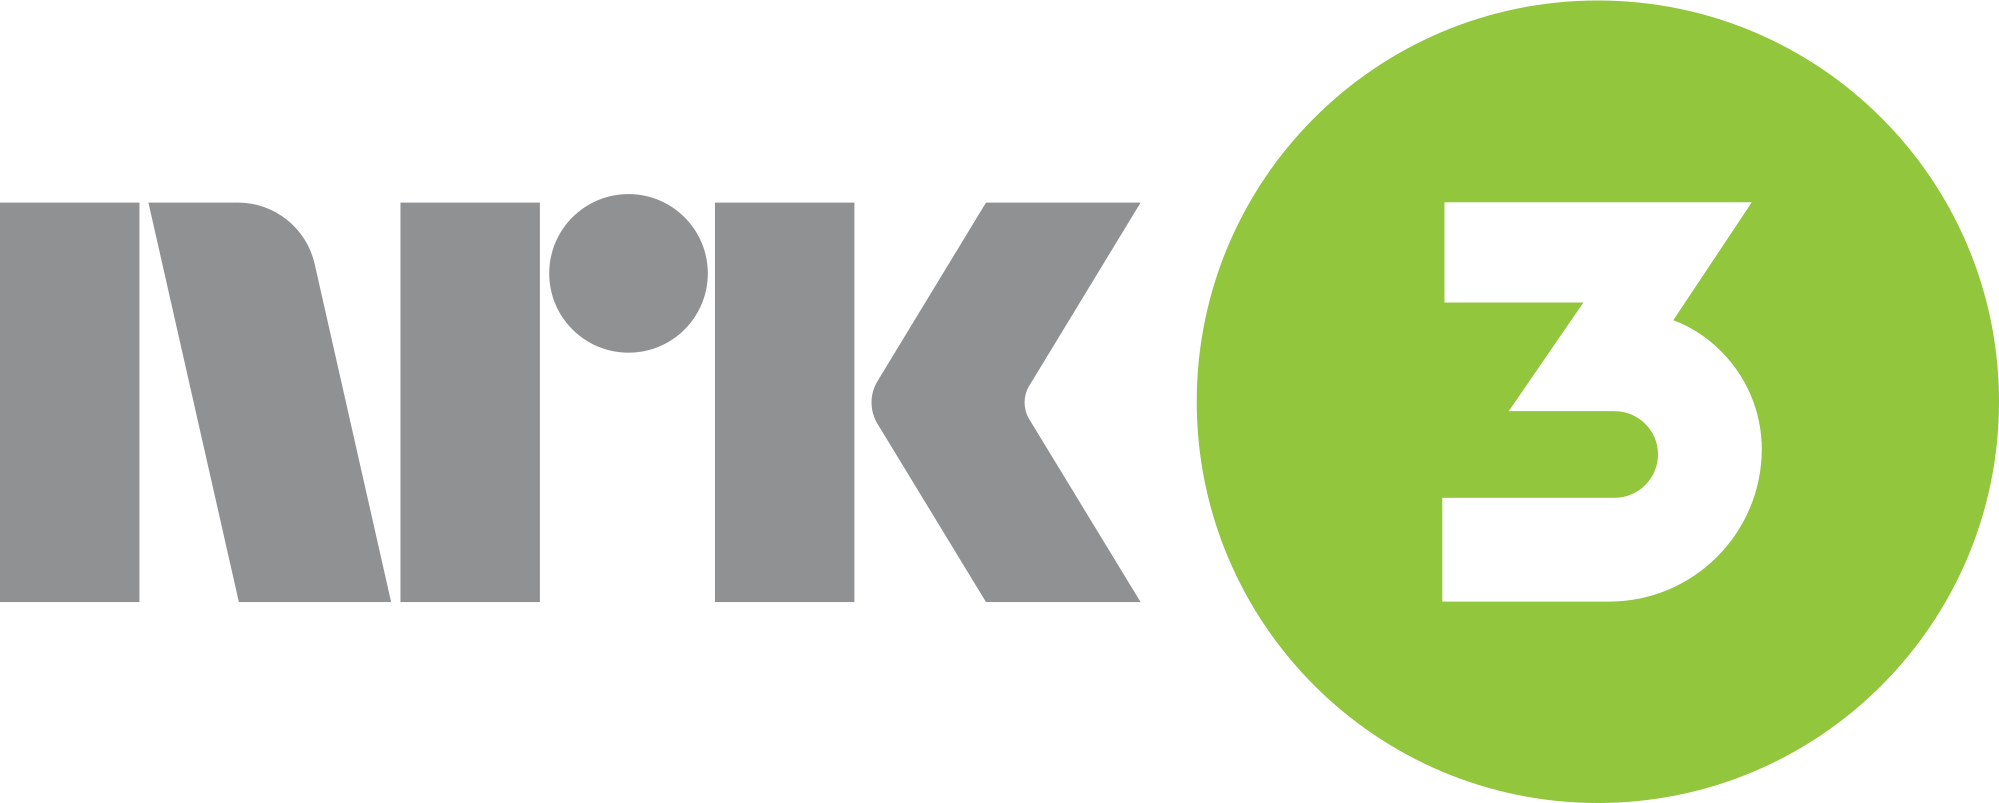 NRK3 - network